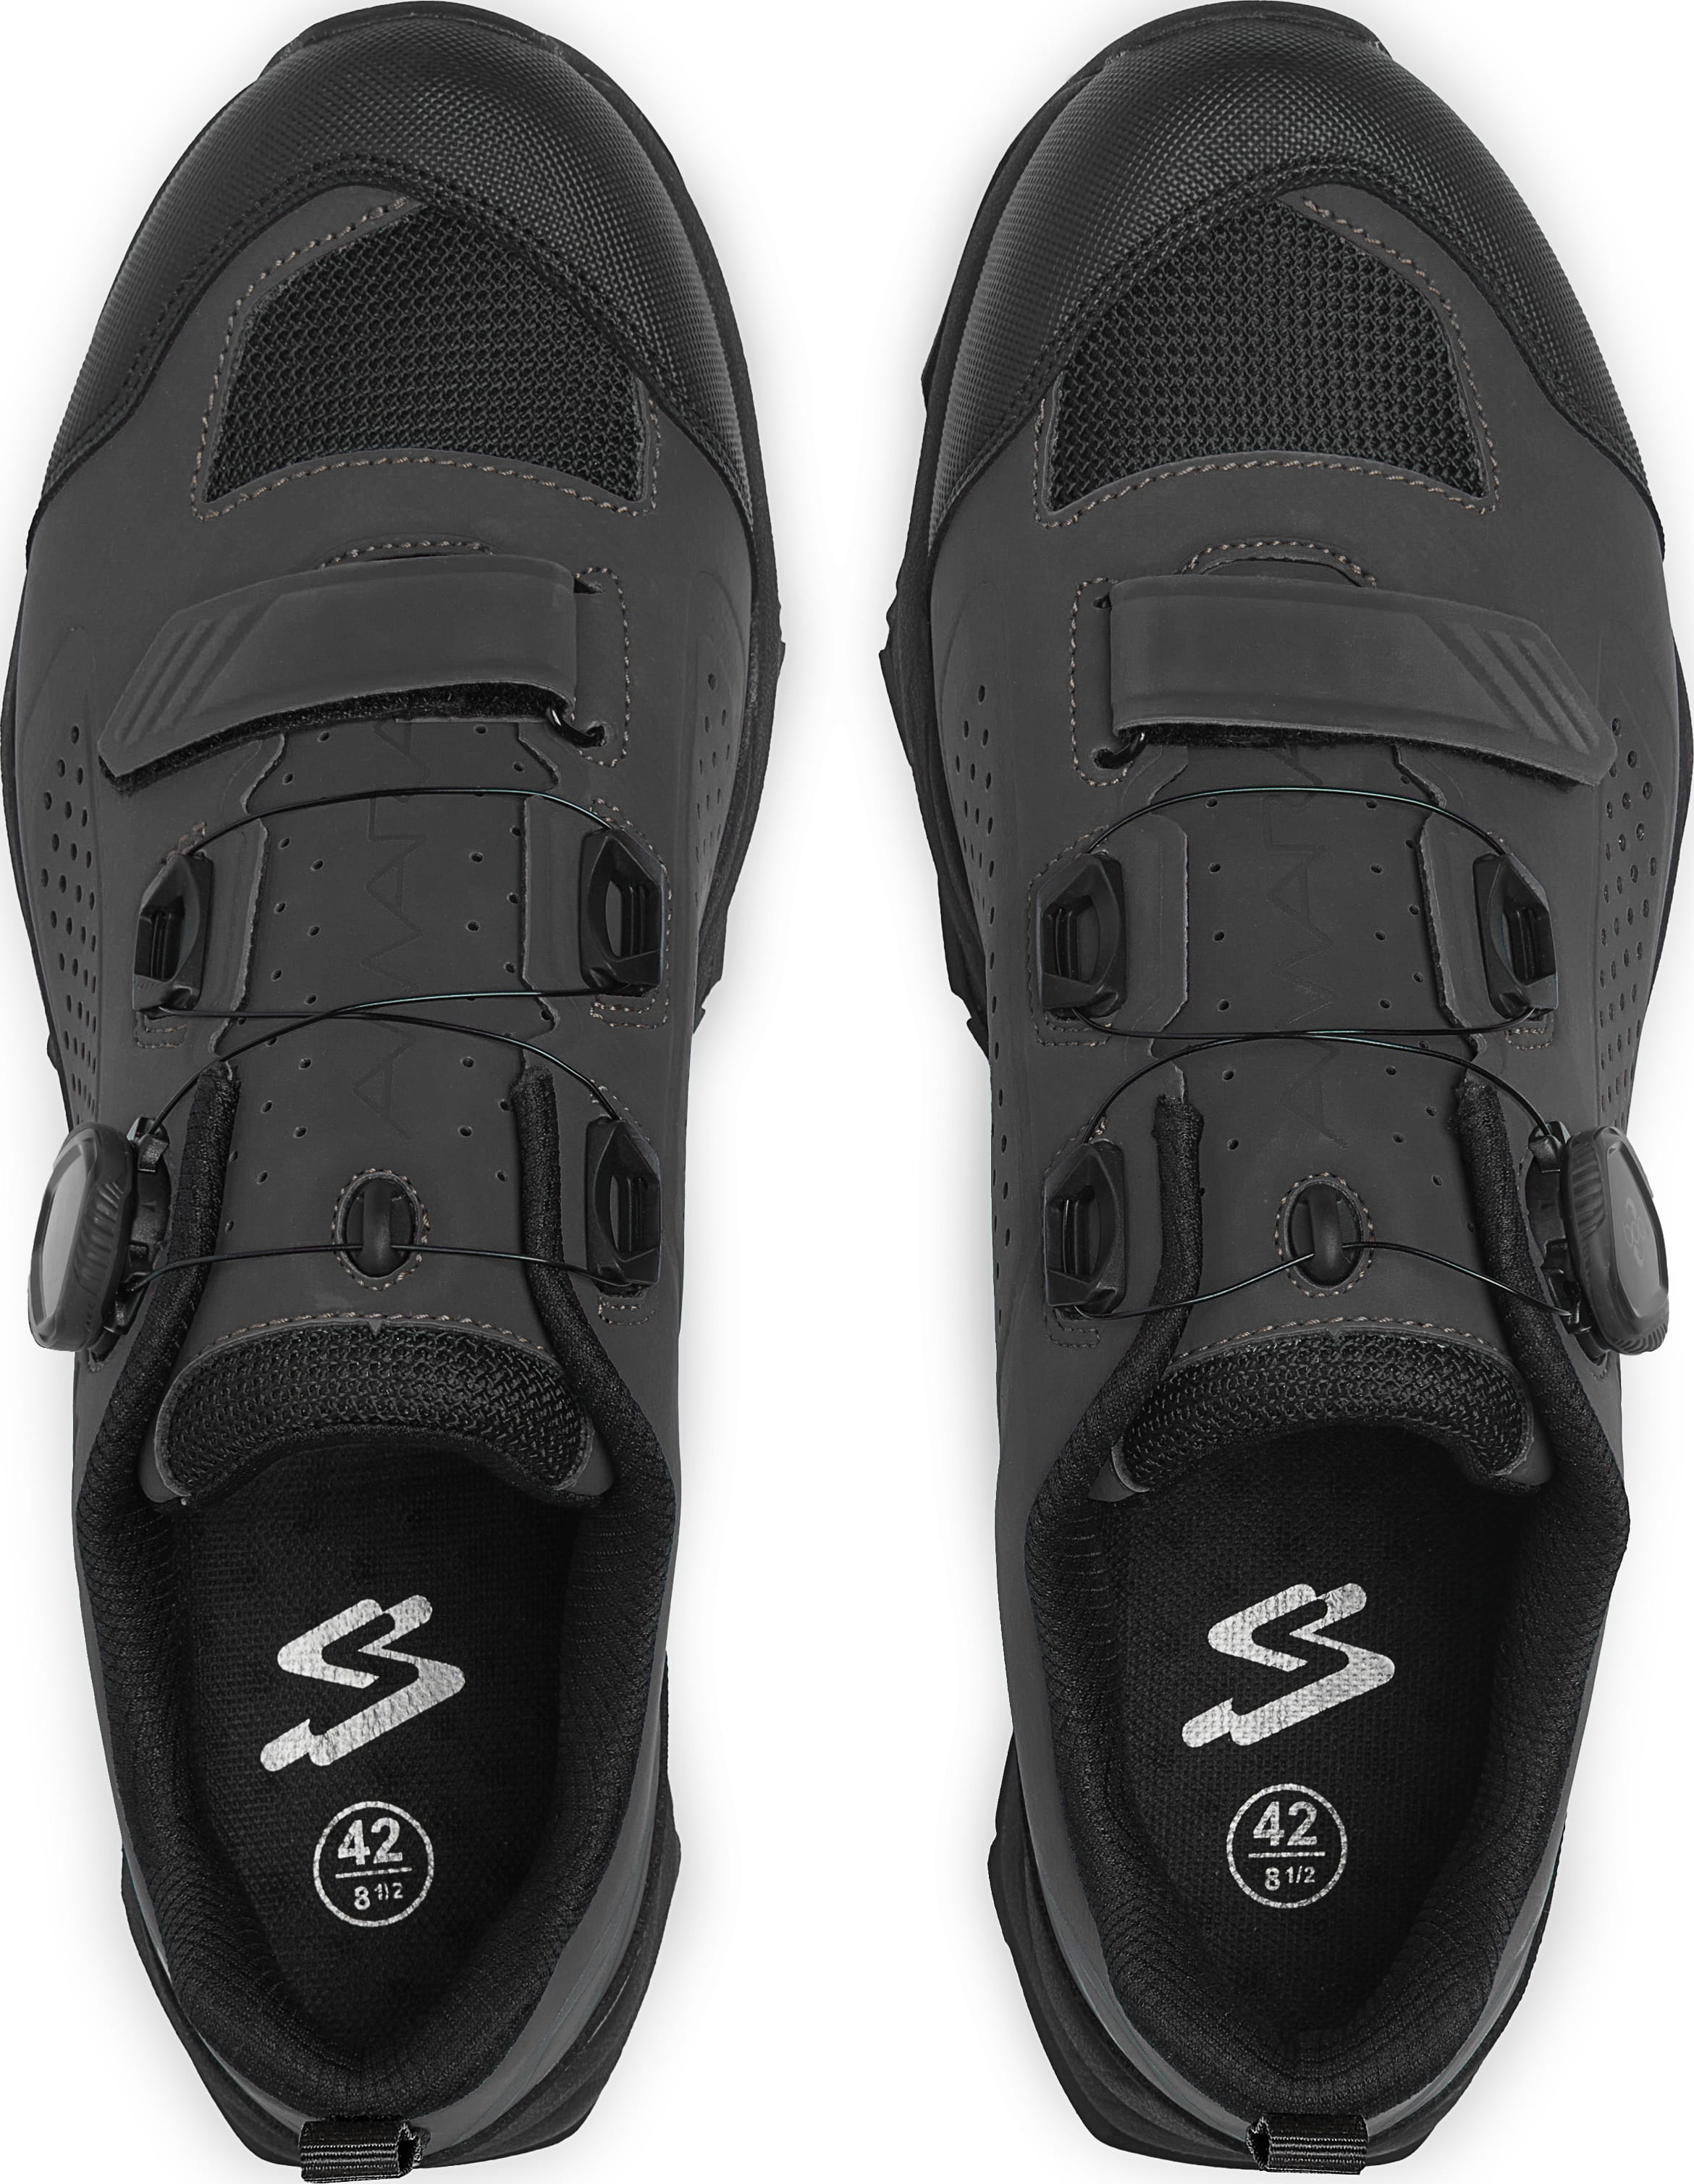 Обувь Spiuk Amara M2V MTB размер UK 11,5 (46 283мм) черные фото 2